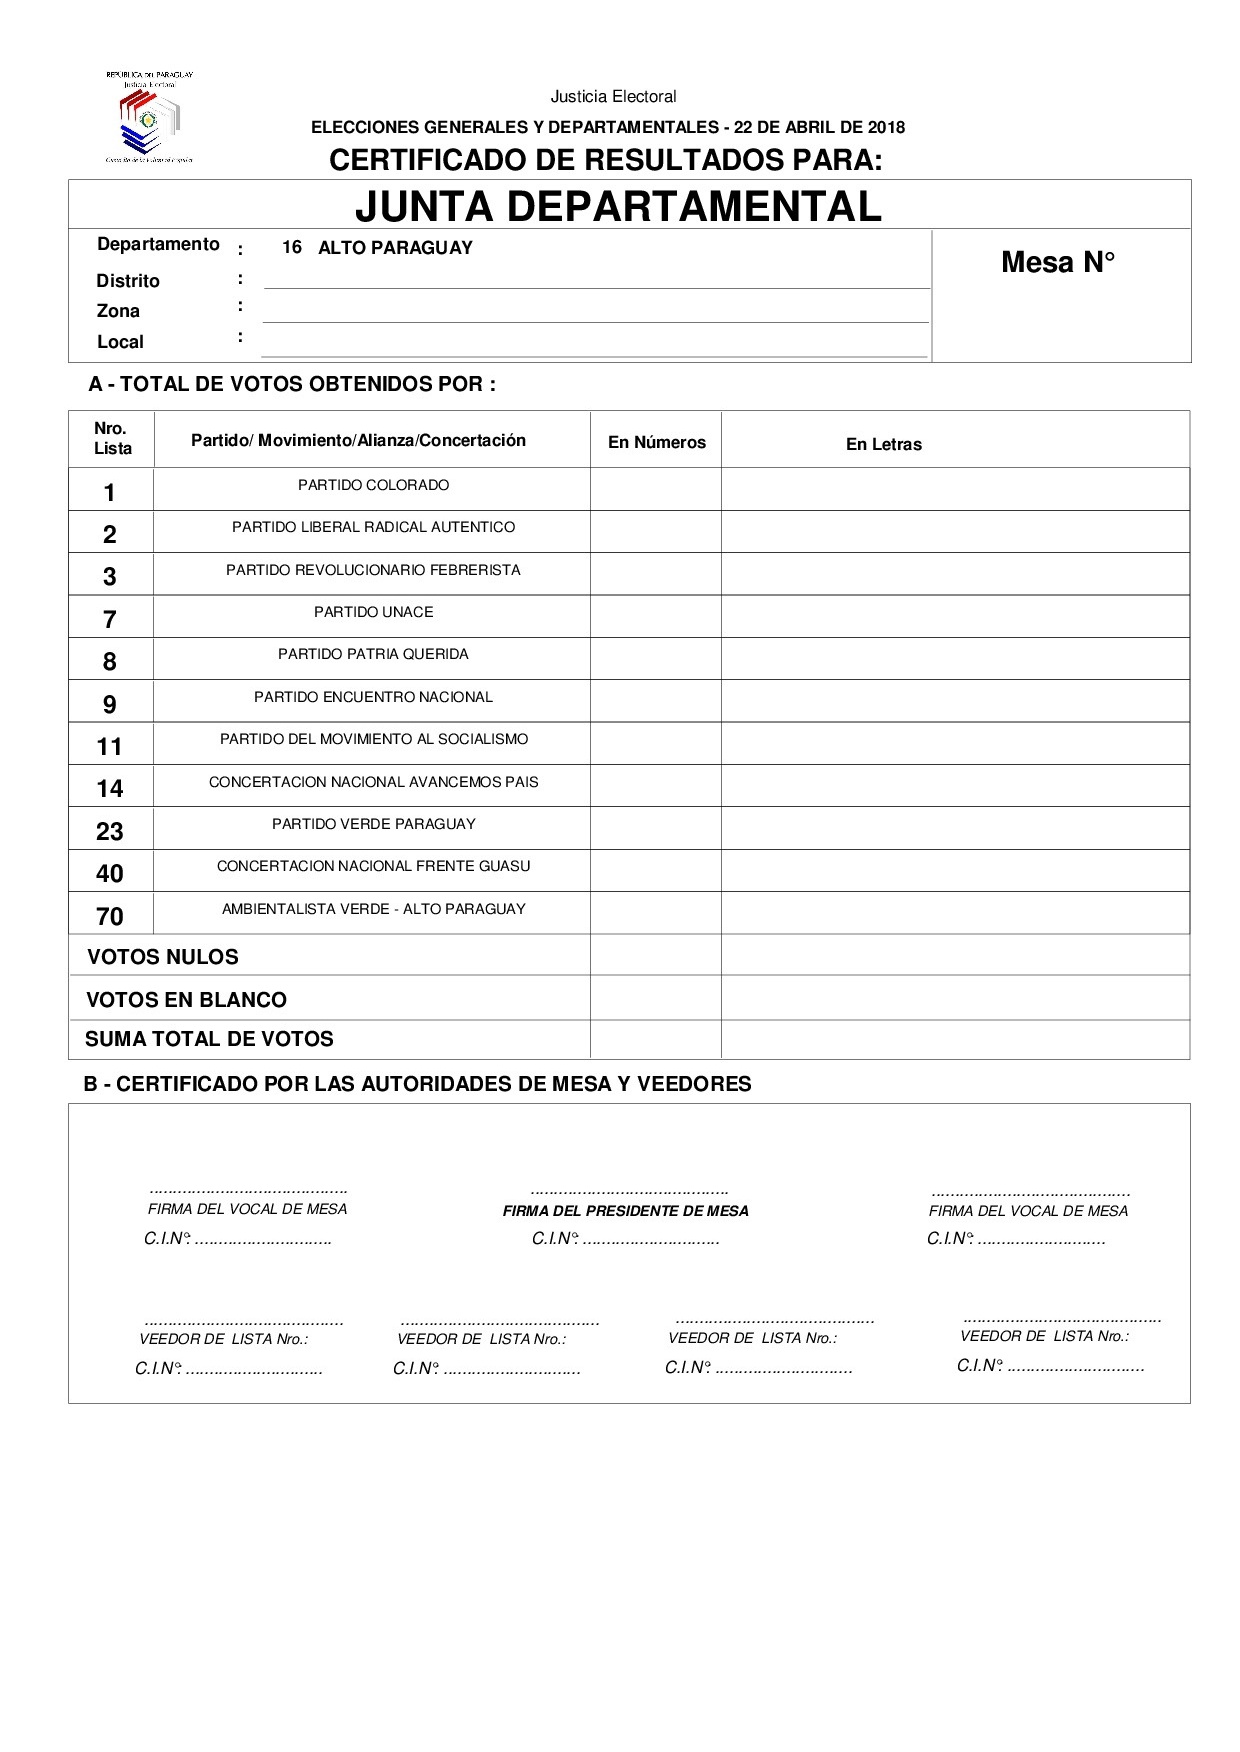 Certificado de Resultados Para JUNTA DEPARTAMENTAL DE ALTO PARAGUAY